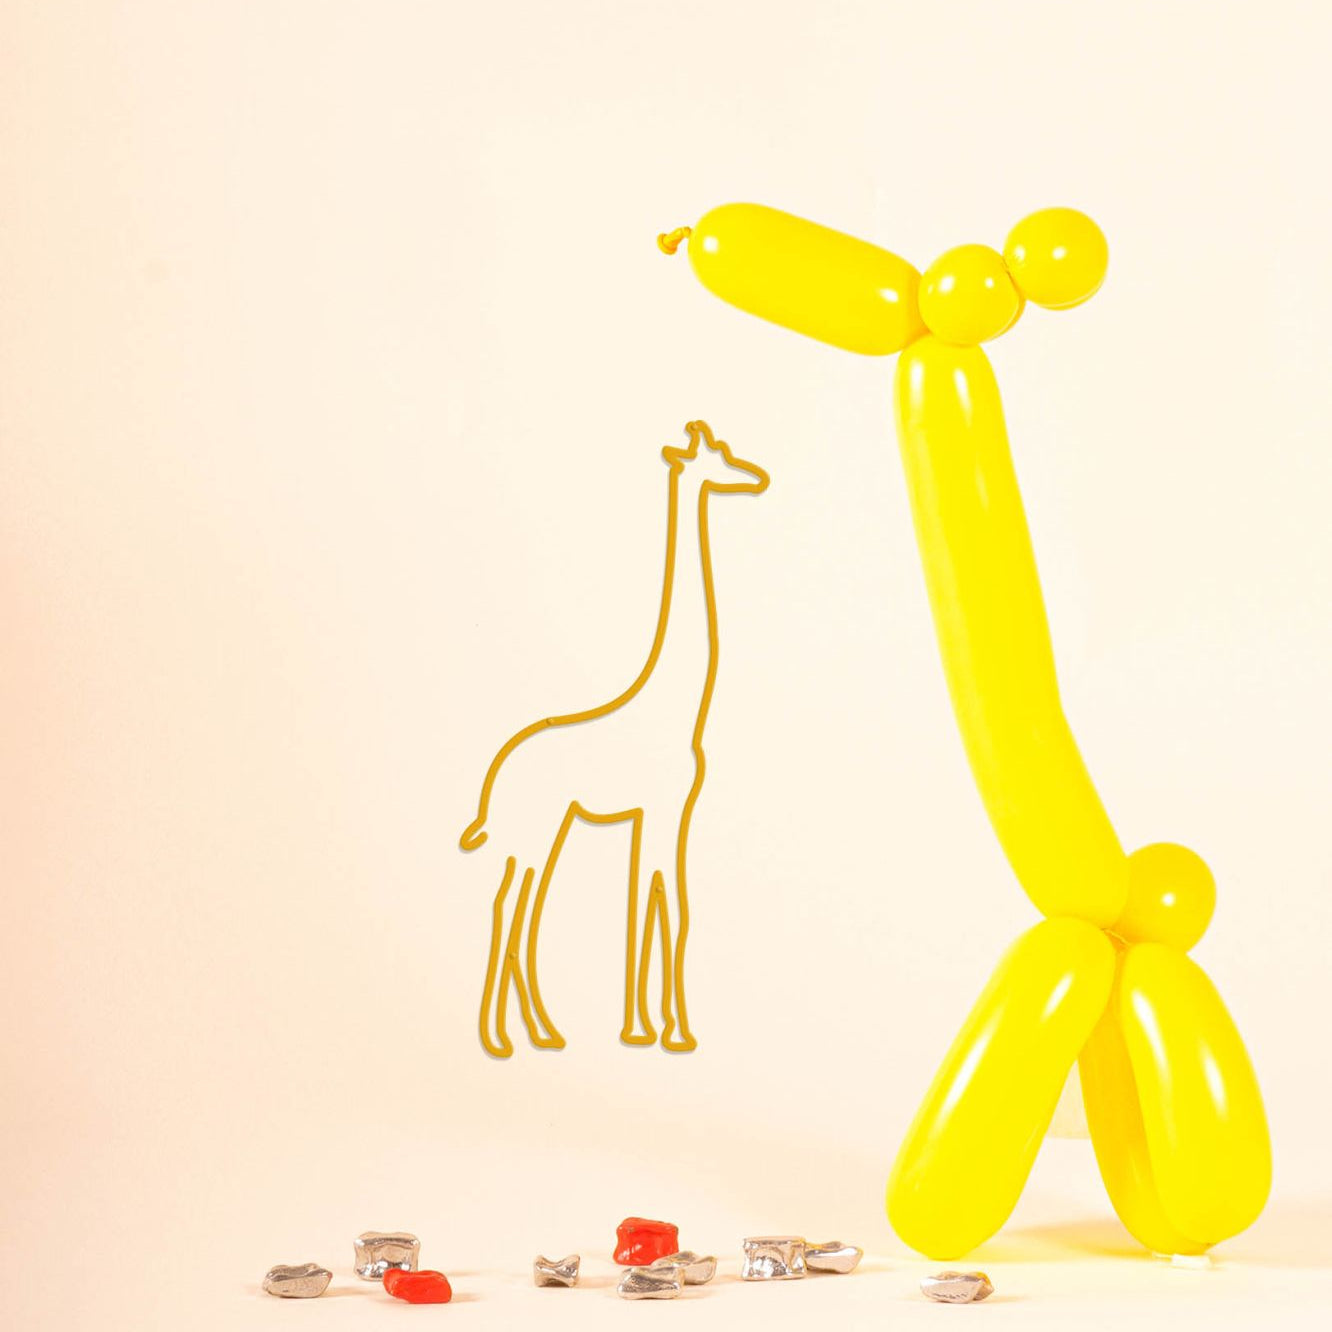 Skyline enfant girafe